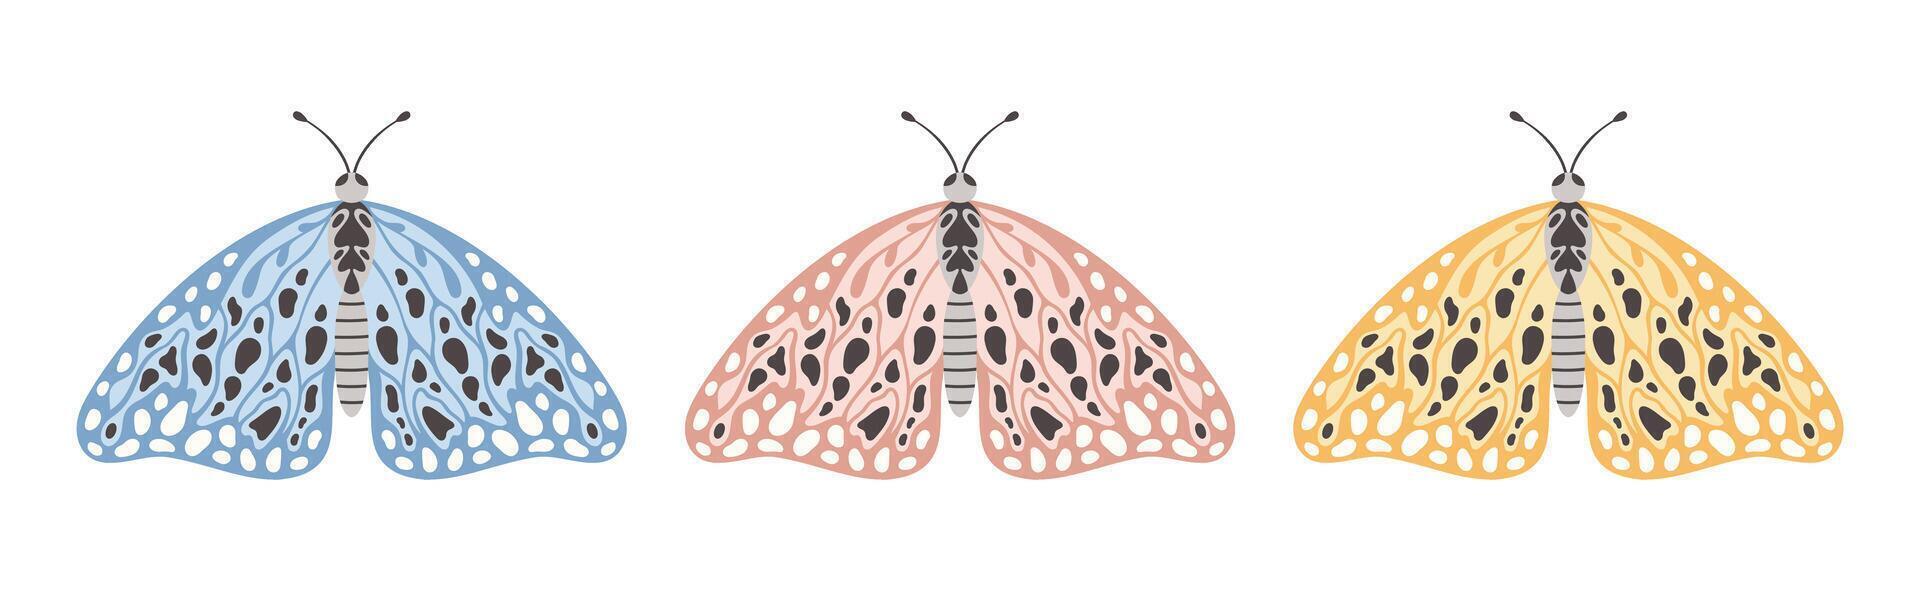 mot of vlinder set, vector illustratie. Vleugels van vliegend insecten met abstract ornament, voorkant visie, element voor tatoeëren ontwerp. zomer achtergrond